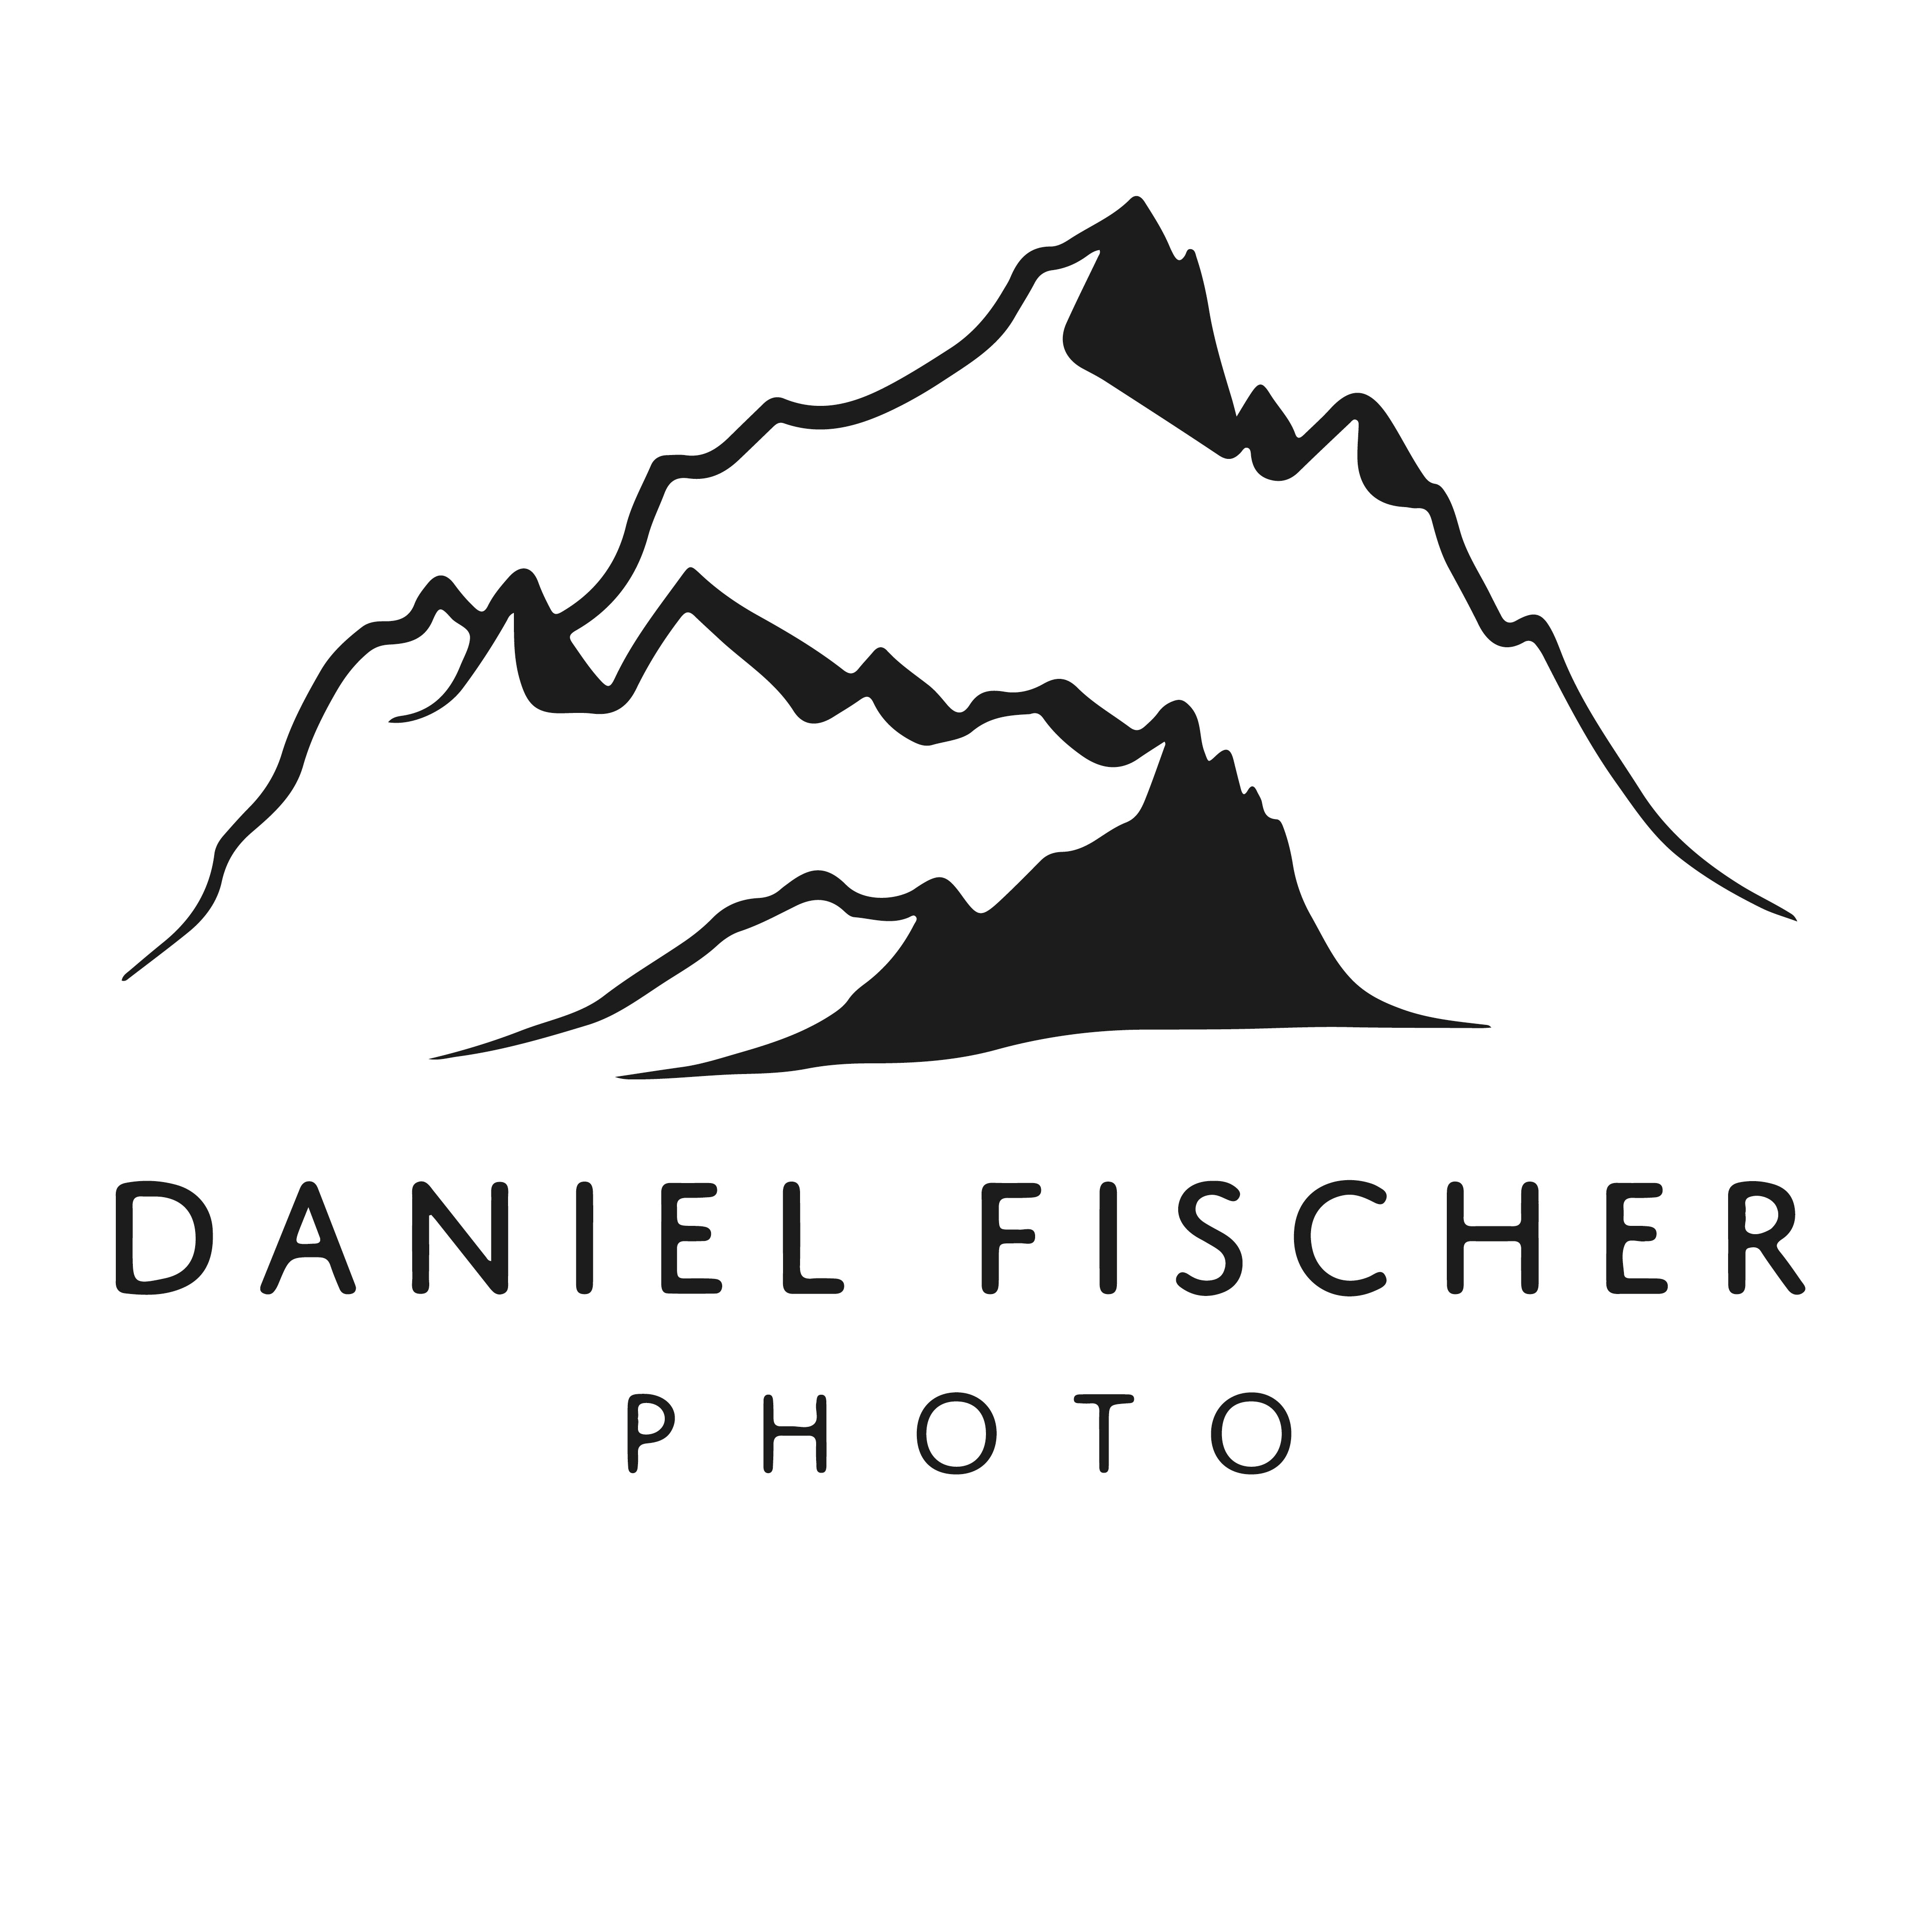 Daniel Fischer Photo